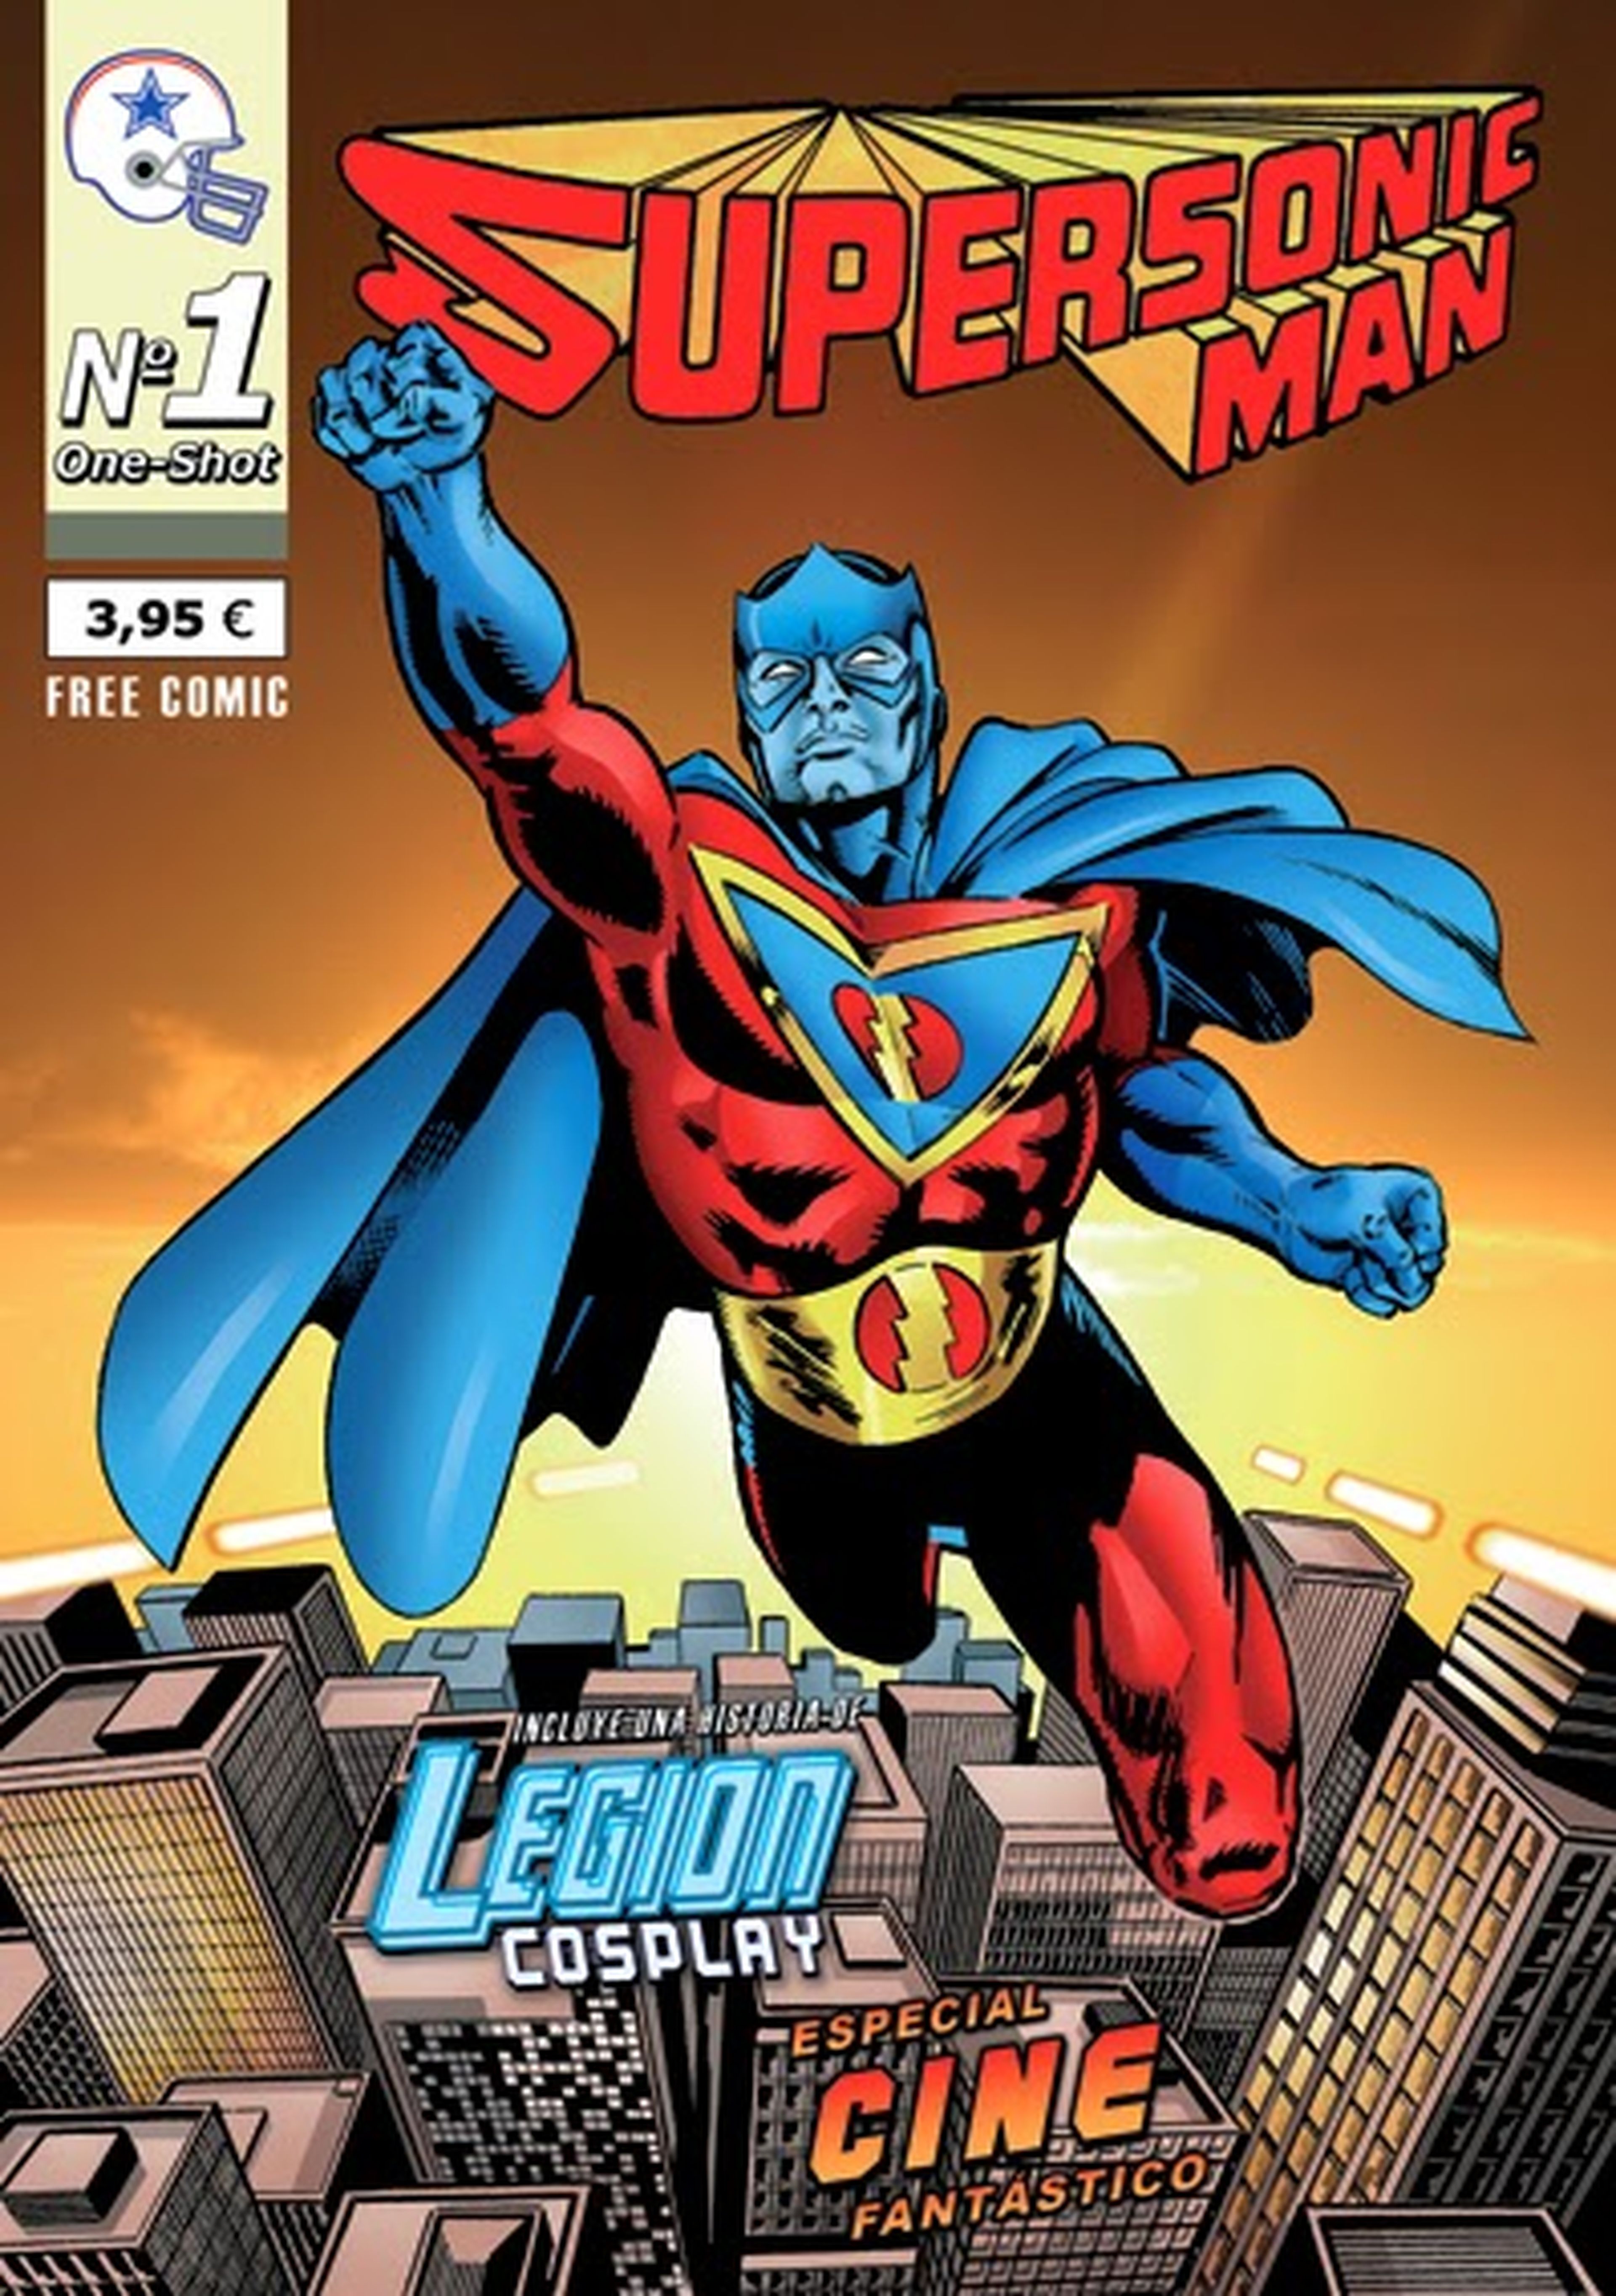 Supersonic Man, el primer superhéroe español, renace